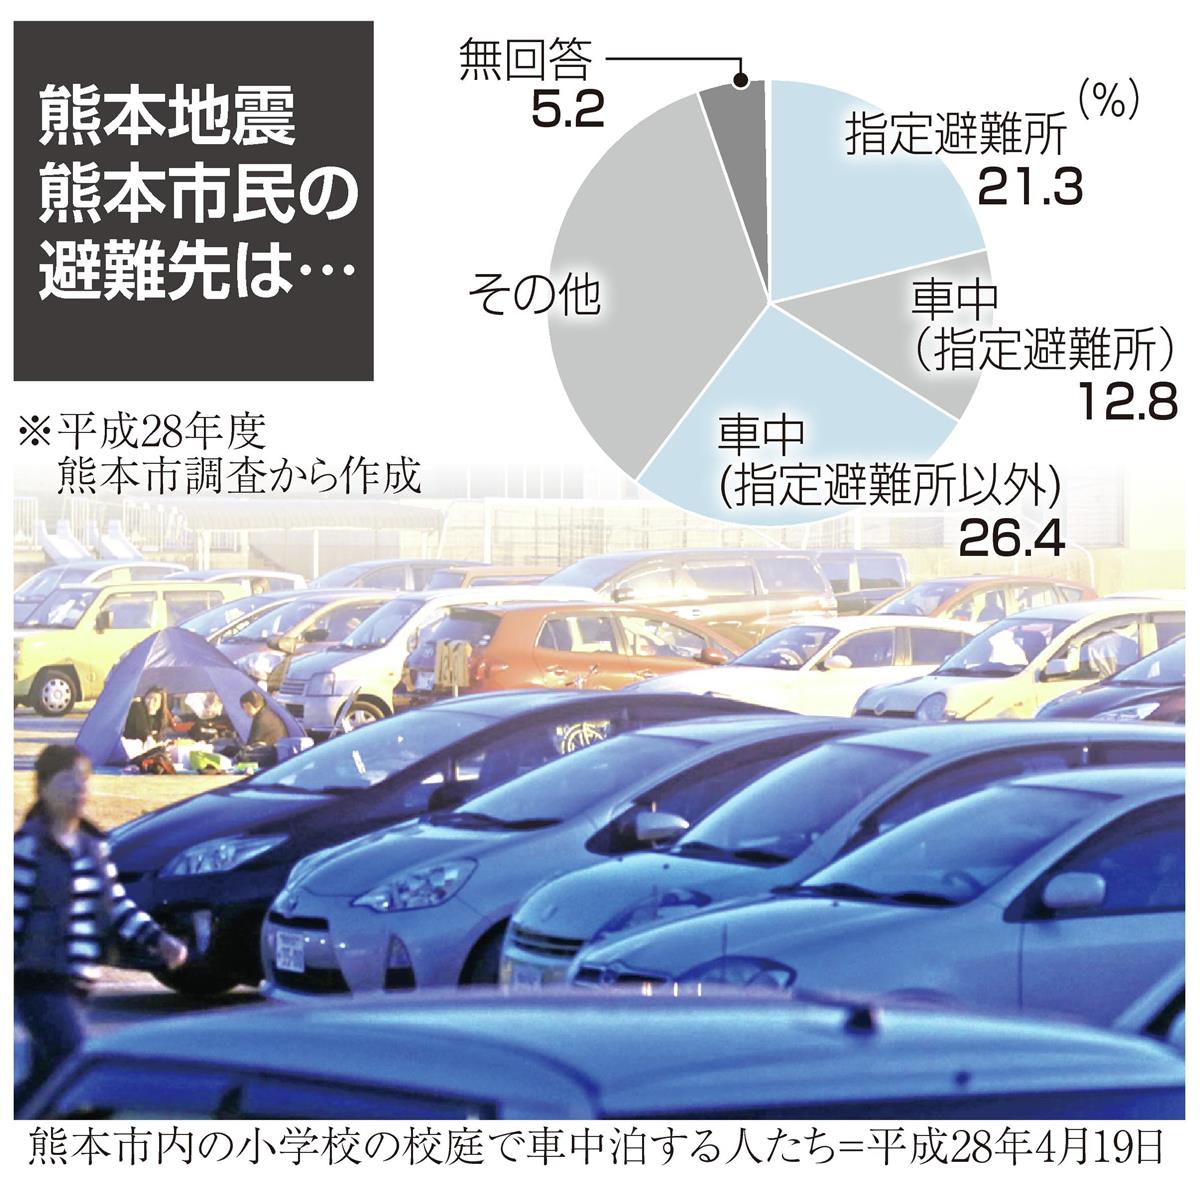 熊本地震５年 コロナ下で車中泊 避難の選択肢として模索 1 2ページ 産経ニュース